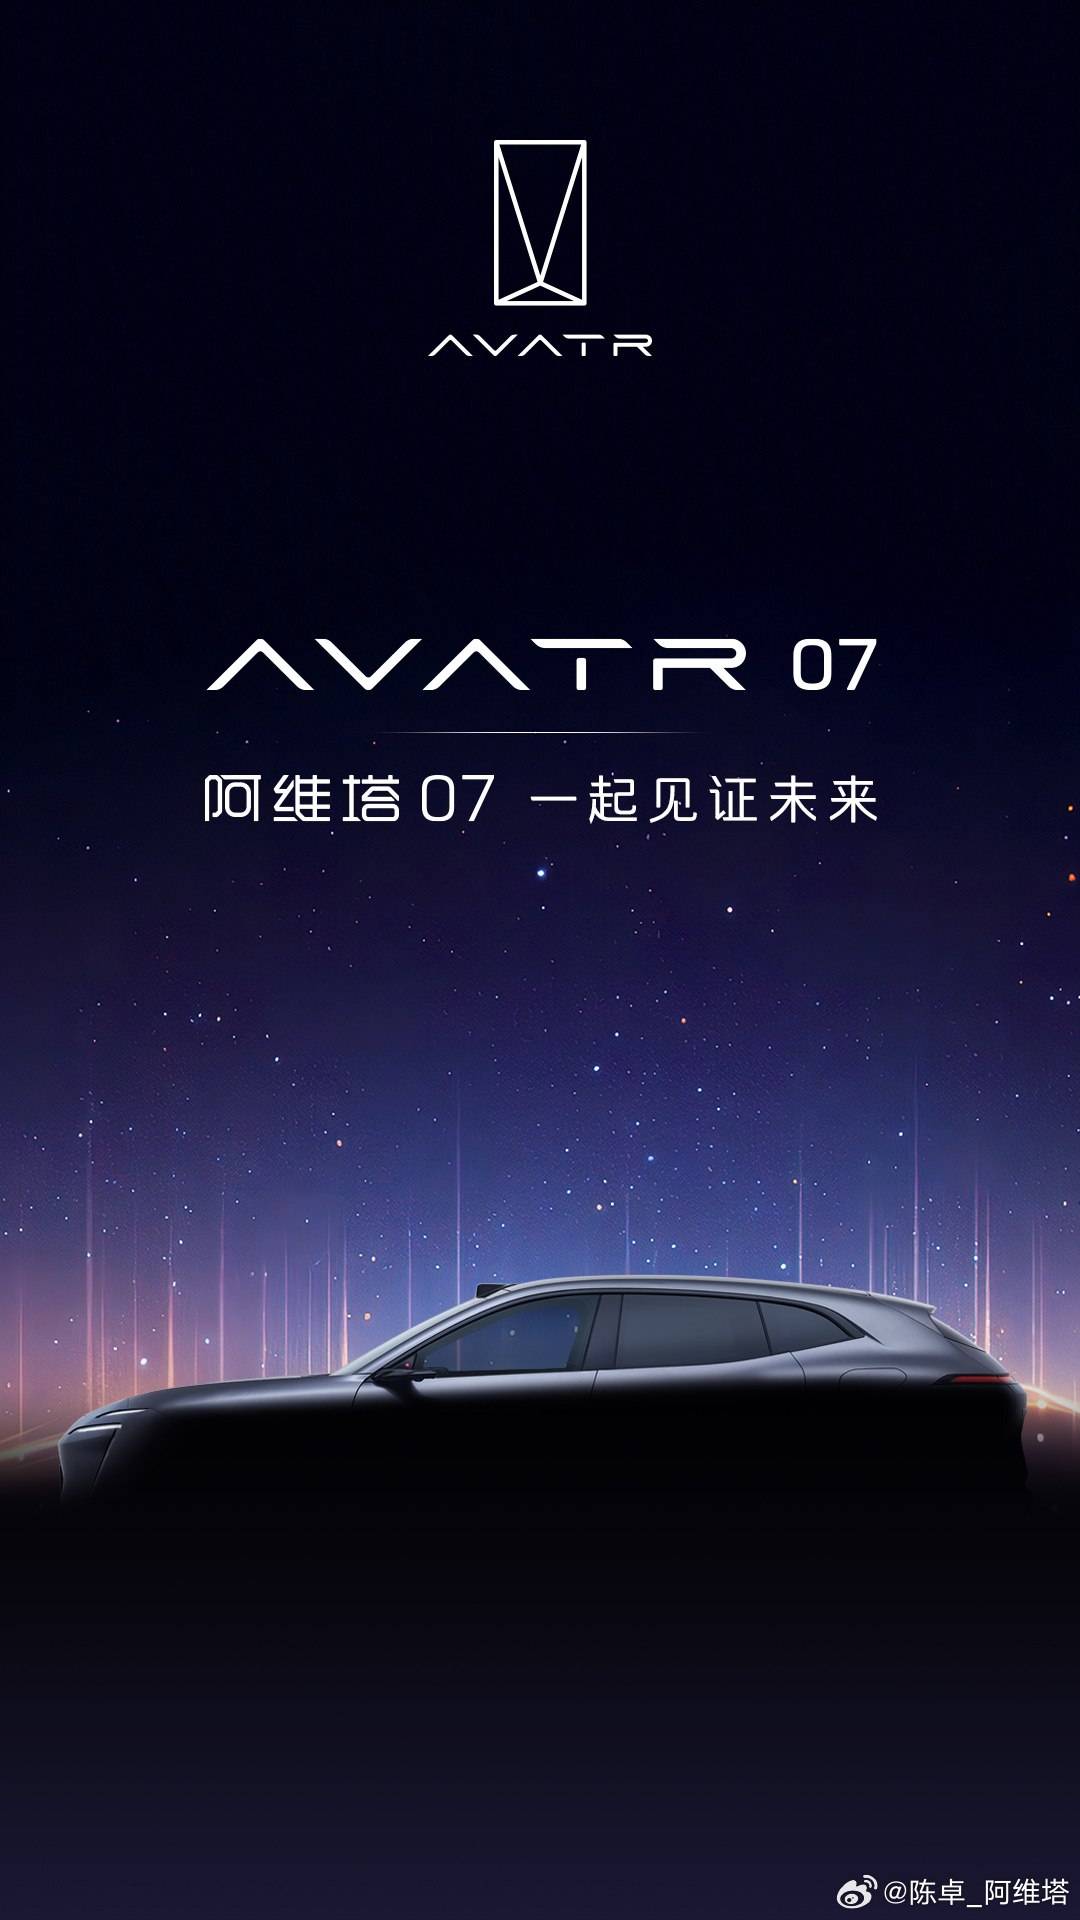 预计价格在25万元至35万元之间。奥睿塔的第三款车型正式命名为奥睿塔07_搜狐汽车_ Sohu.com。